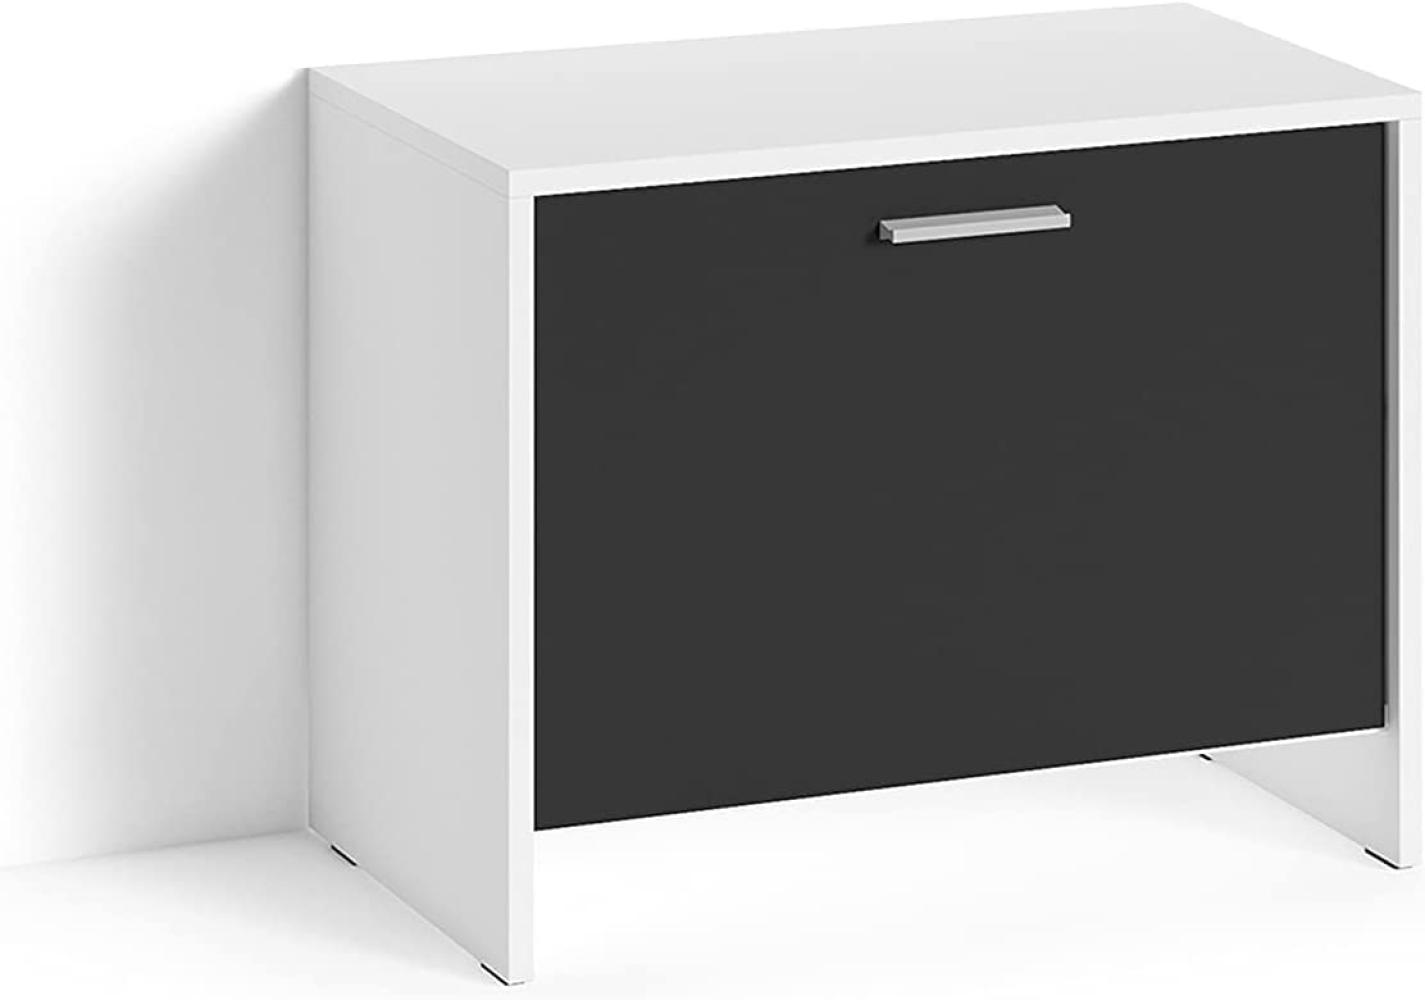 byLIVING Sitzbank BEN / Schuhschrank in matt weiß / Front schwarz / kleine Flur-Kommode mit Klappe und Einlegeboden / B 60, H 48, T 35 cm Bild 1